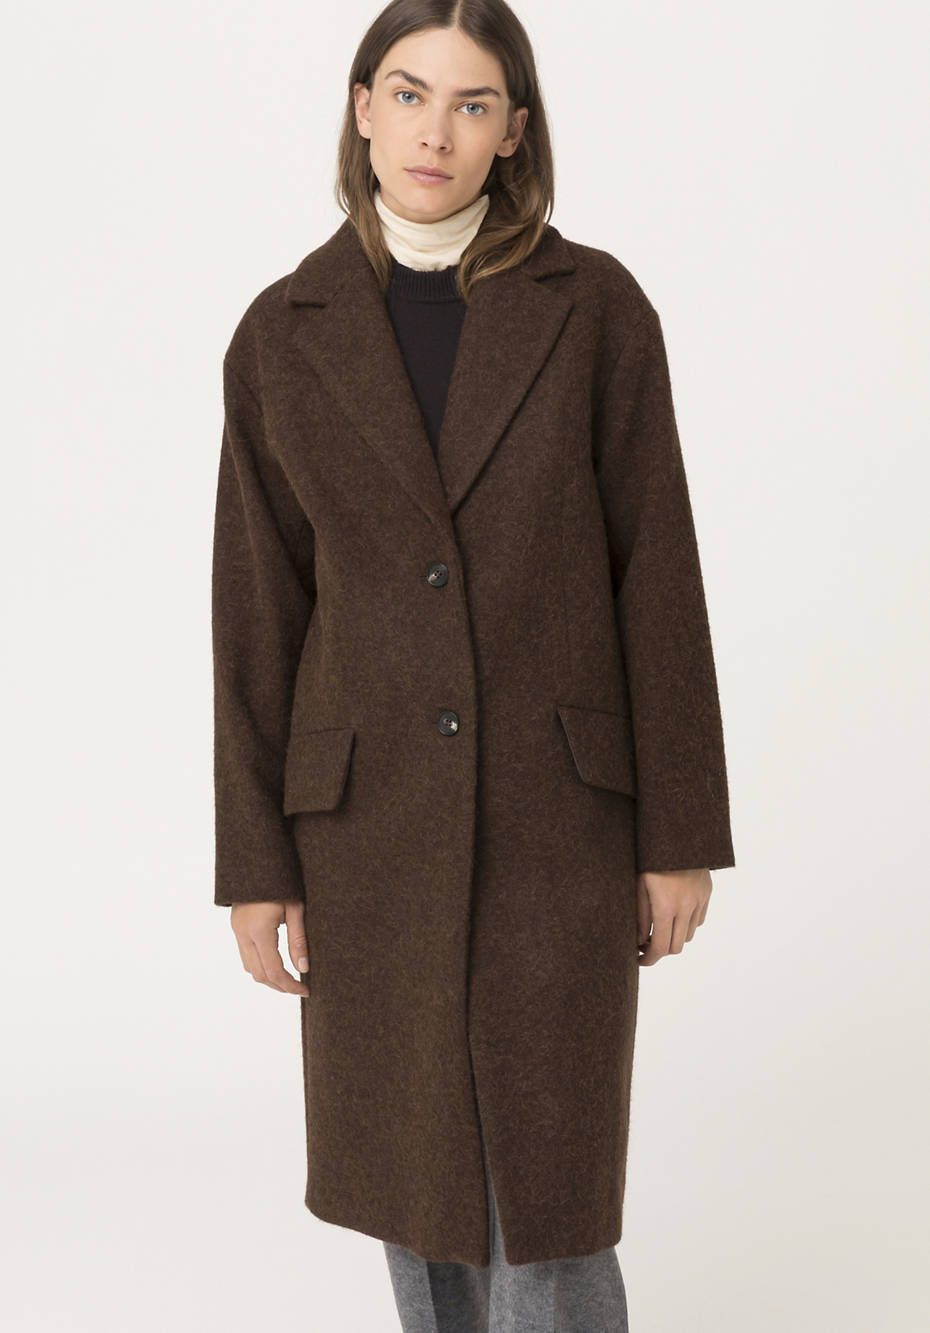 Mantel aus Alpaka mit Schurwolle